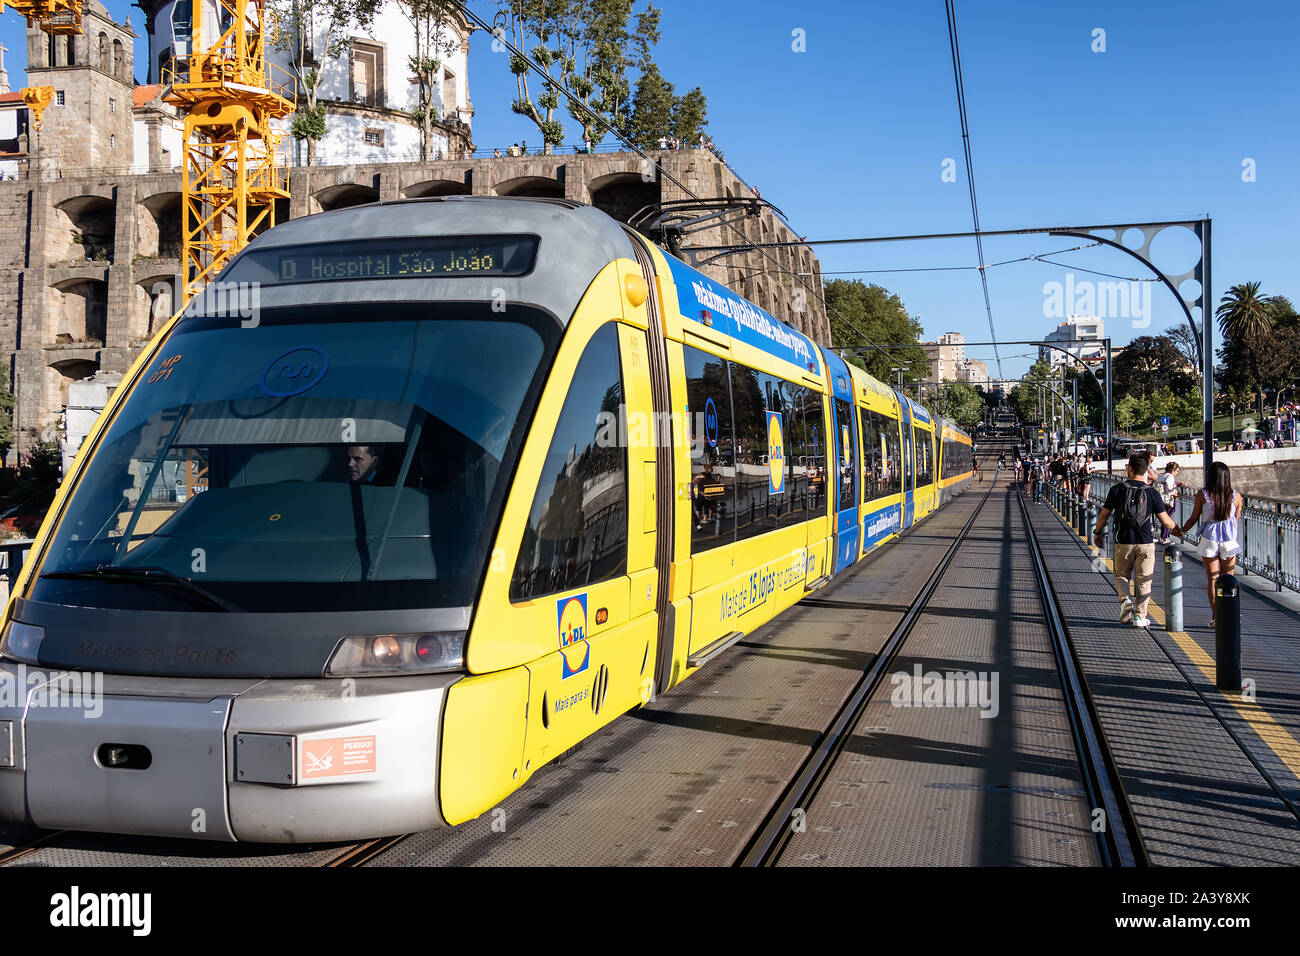 Porto, Portugal, July 19, 2019: View of the metro tram train crossing the Dom Luis I bridge in Porto, Portugal Stock Photo